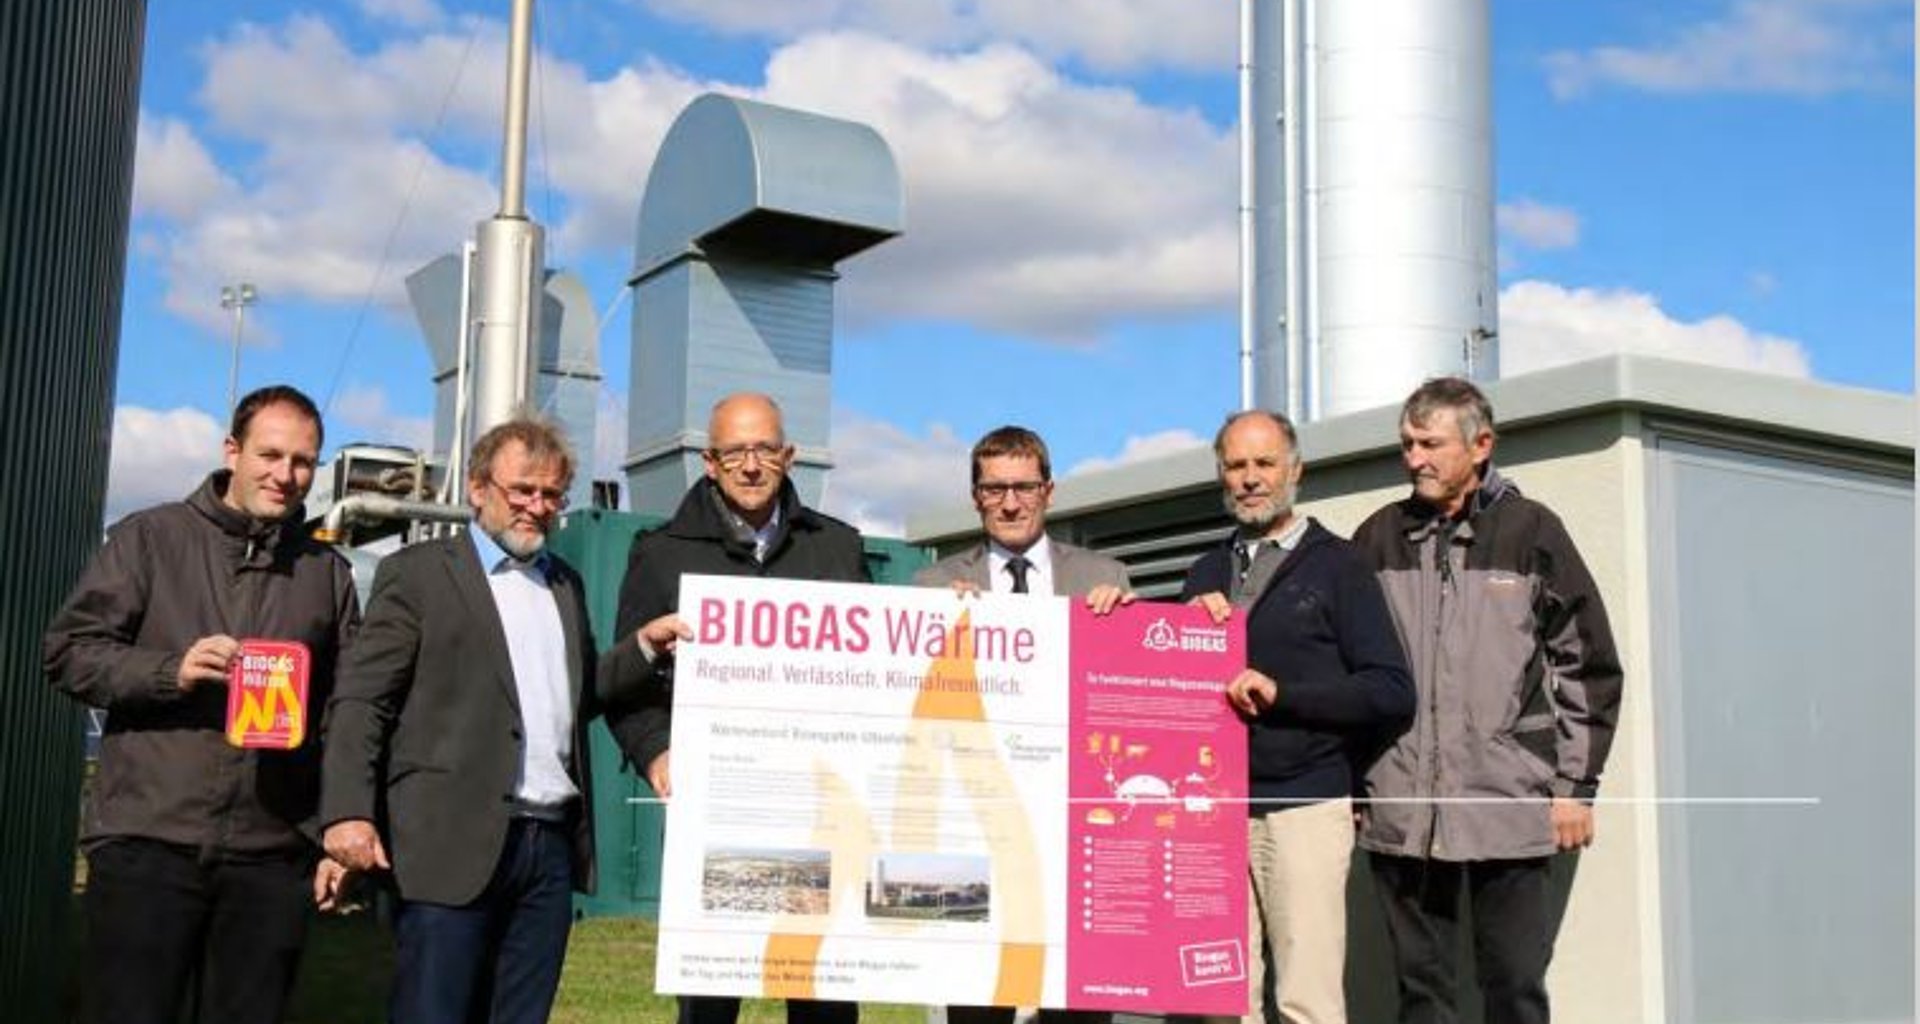 sechs Männer halten ein Plakat mit der Aufschrift "Biogas Wärme" in den Händen.